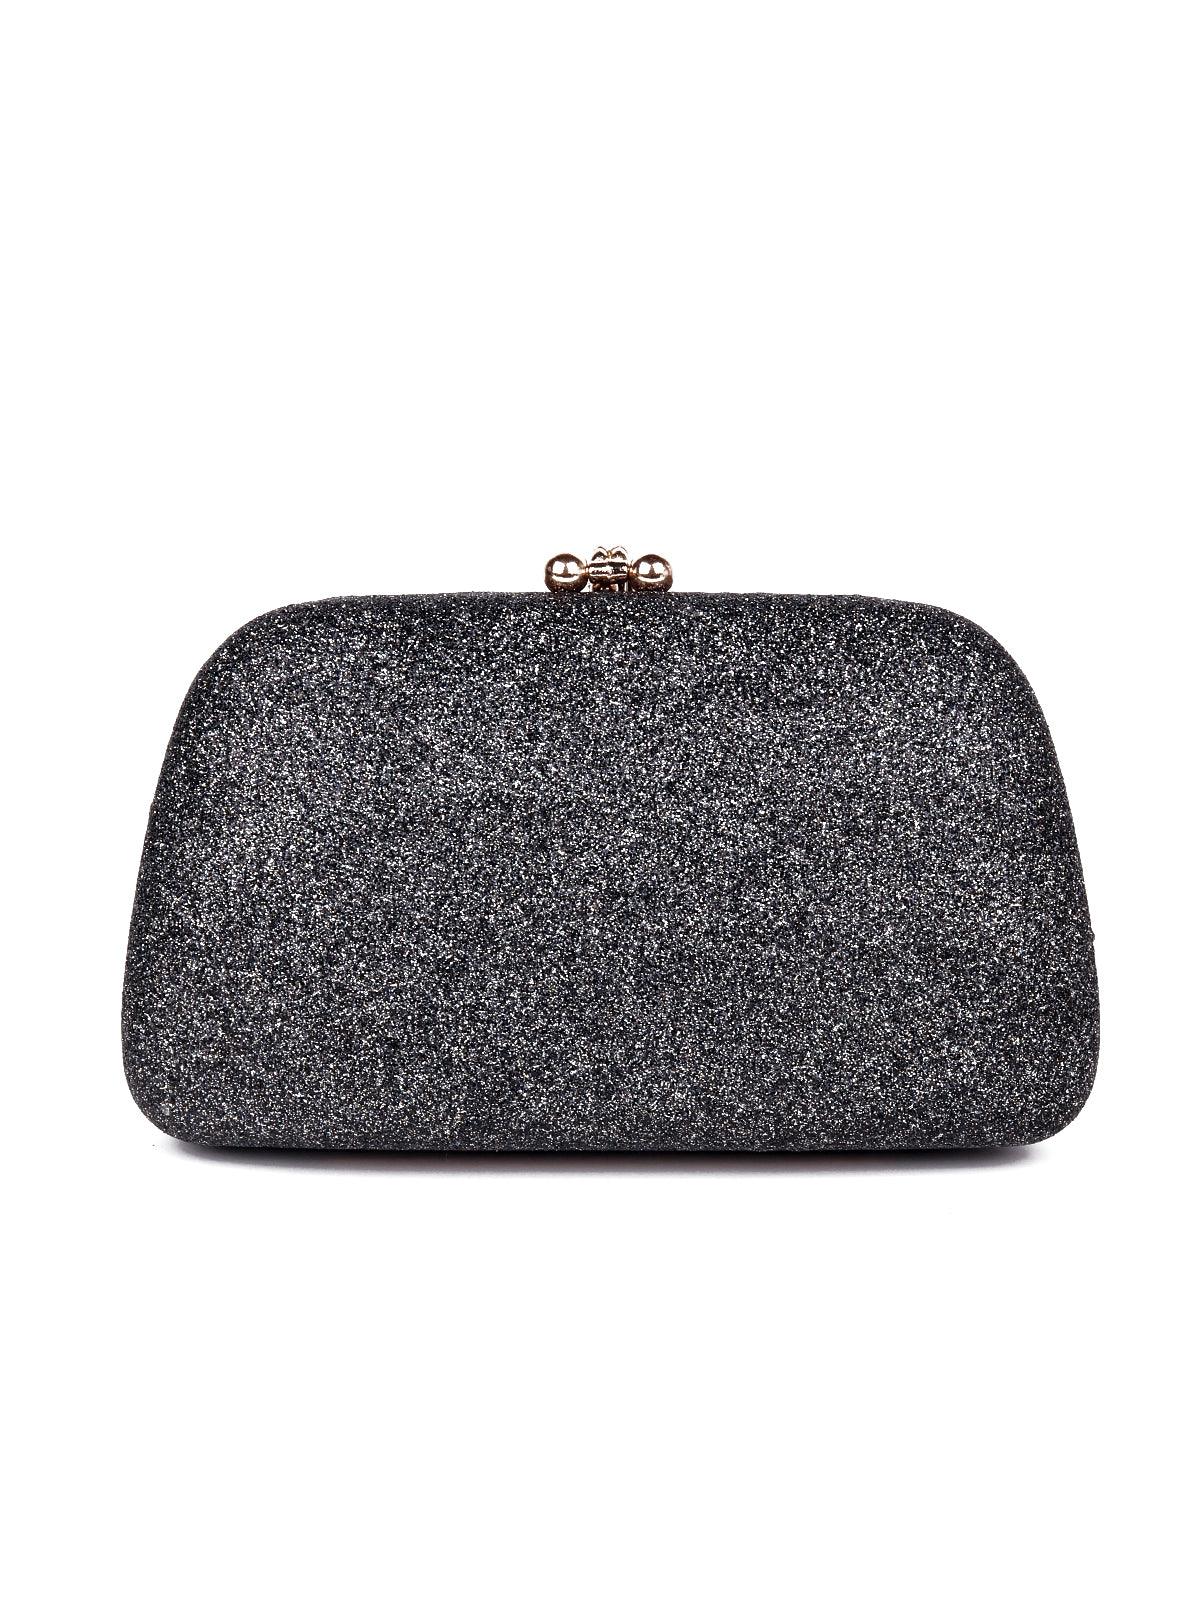 Shimmering smoke grey floral studded clutch/sling bag - Odette